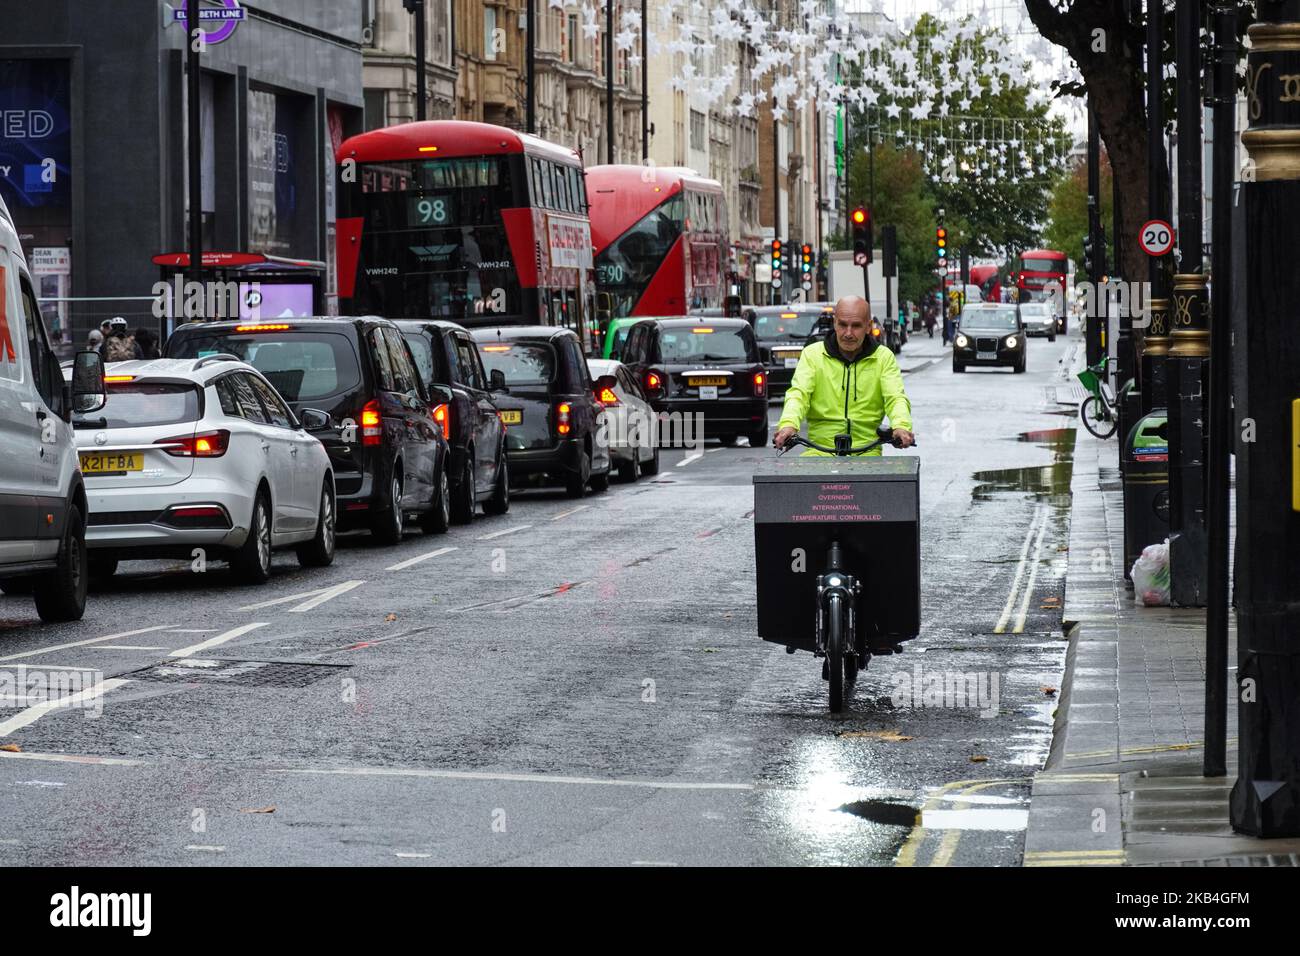 Coursier sur un vélo de cargaison à Londres, Angleterre Royaume-Uni Banque D'Images